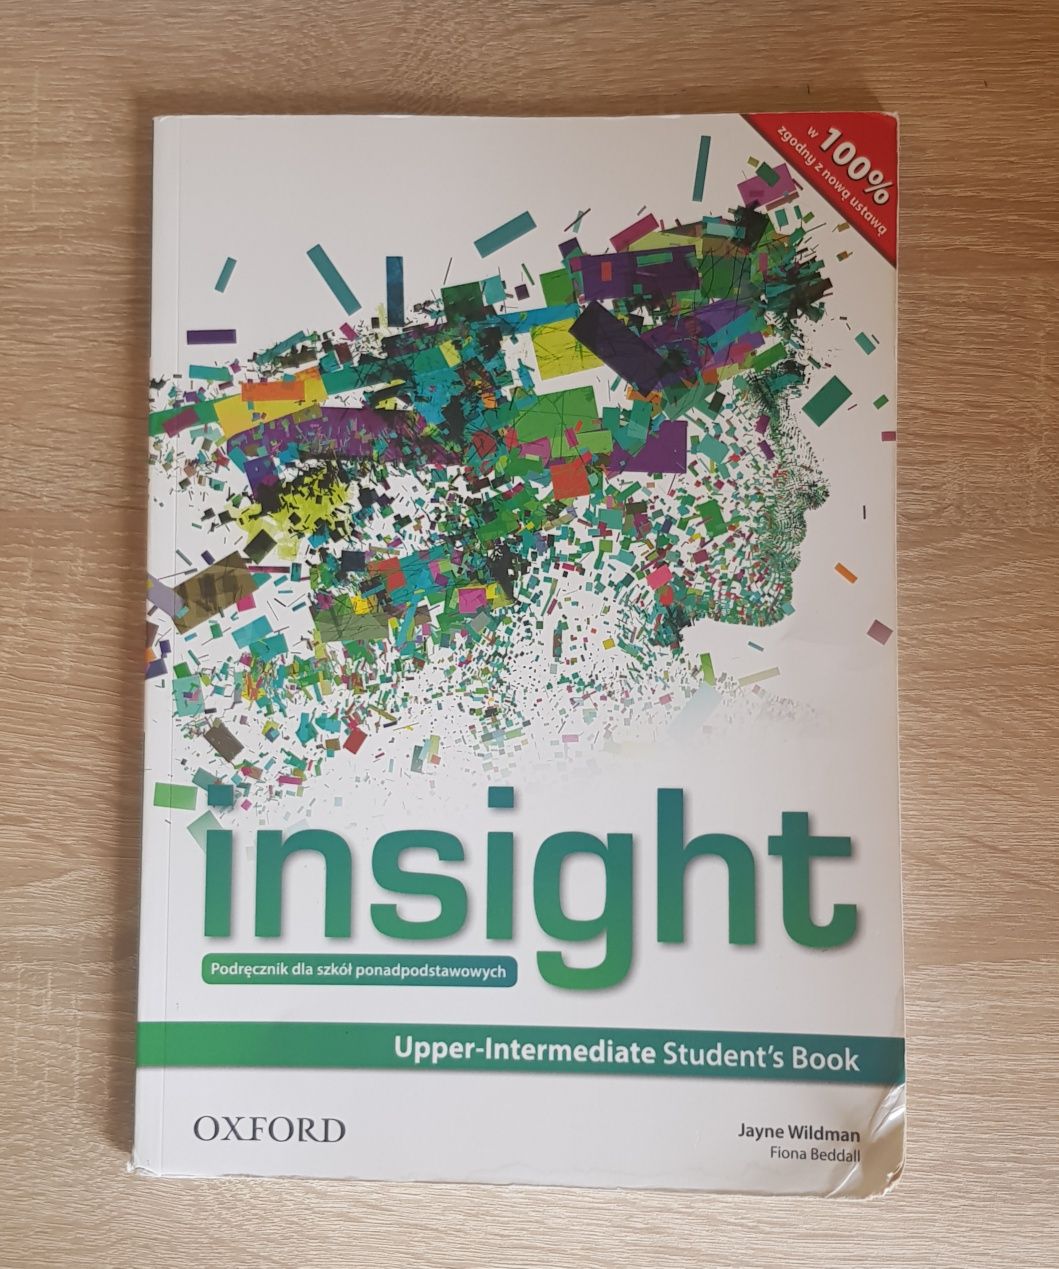 Insight Upper-intermediate Student's Book. Oxford